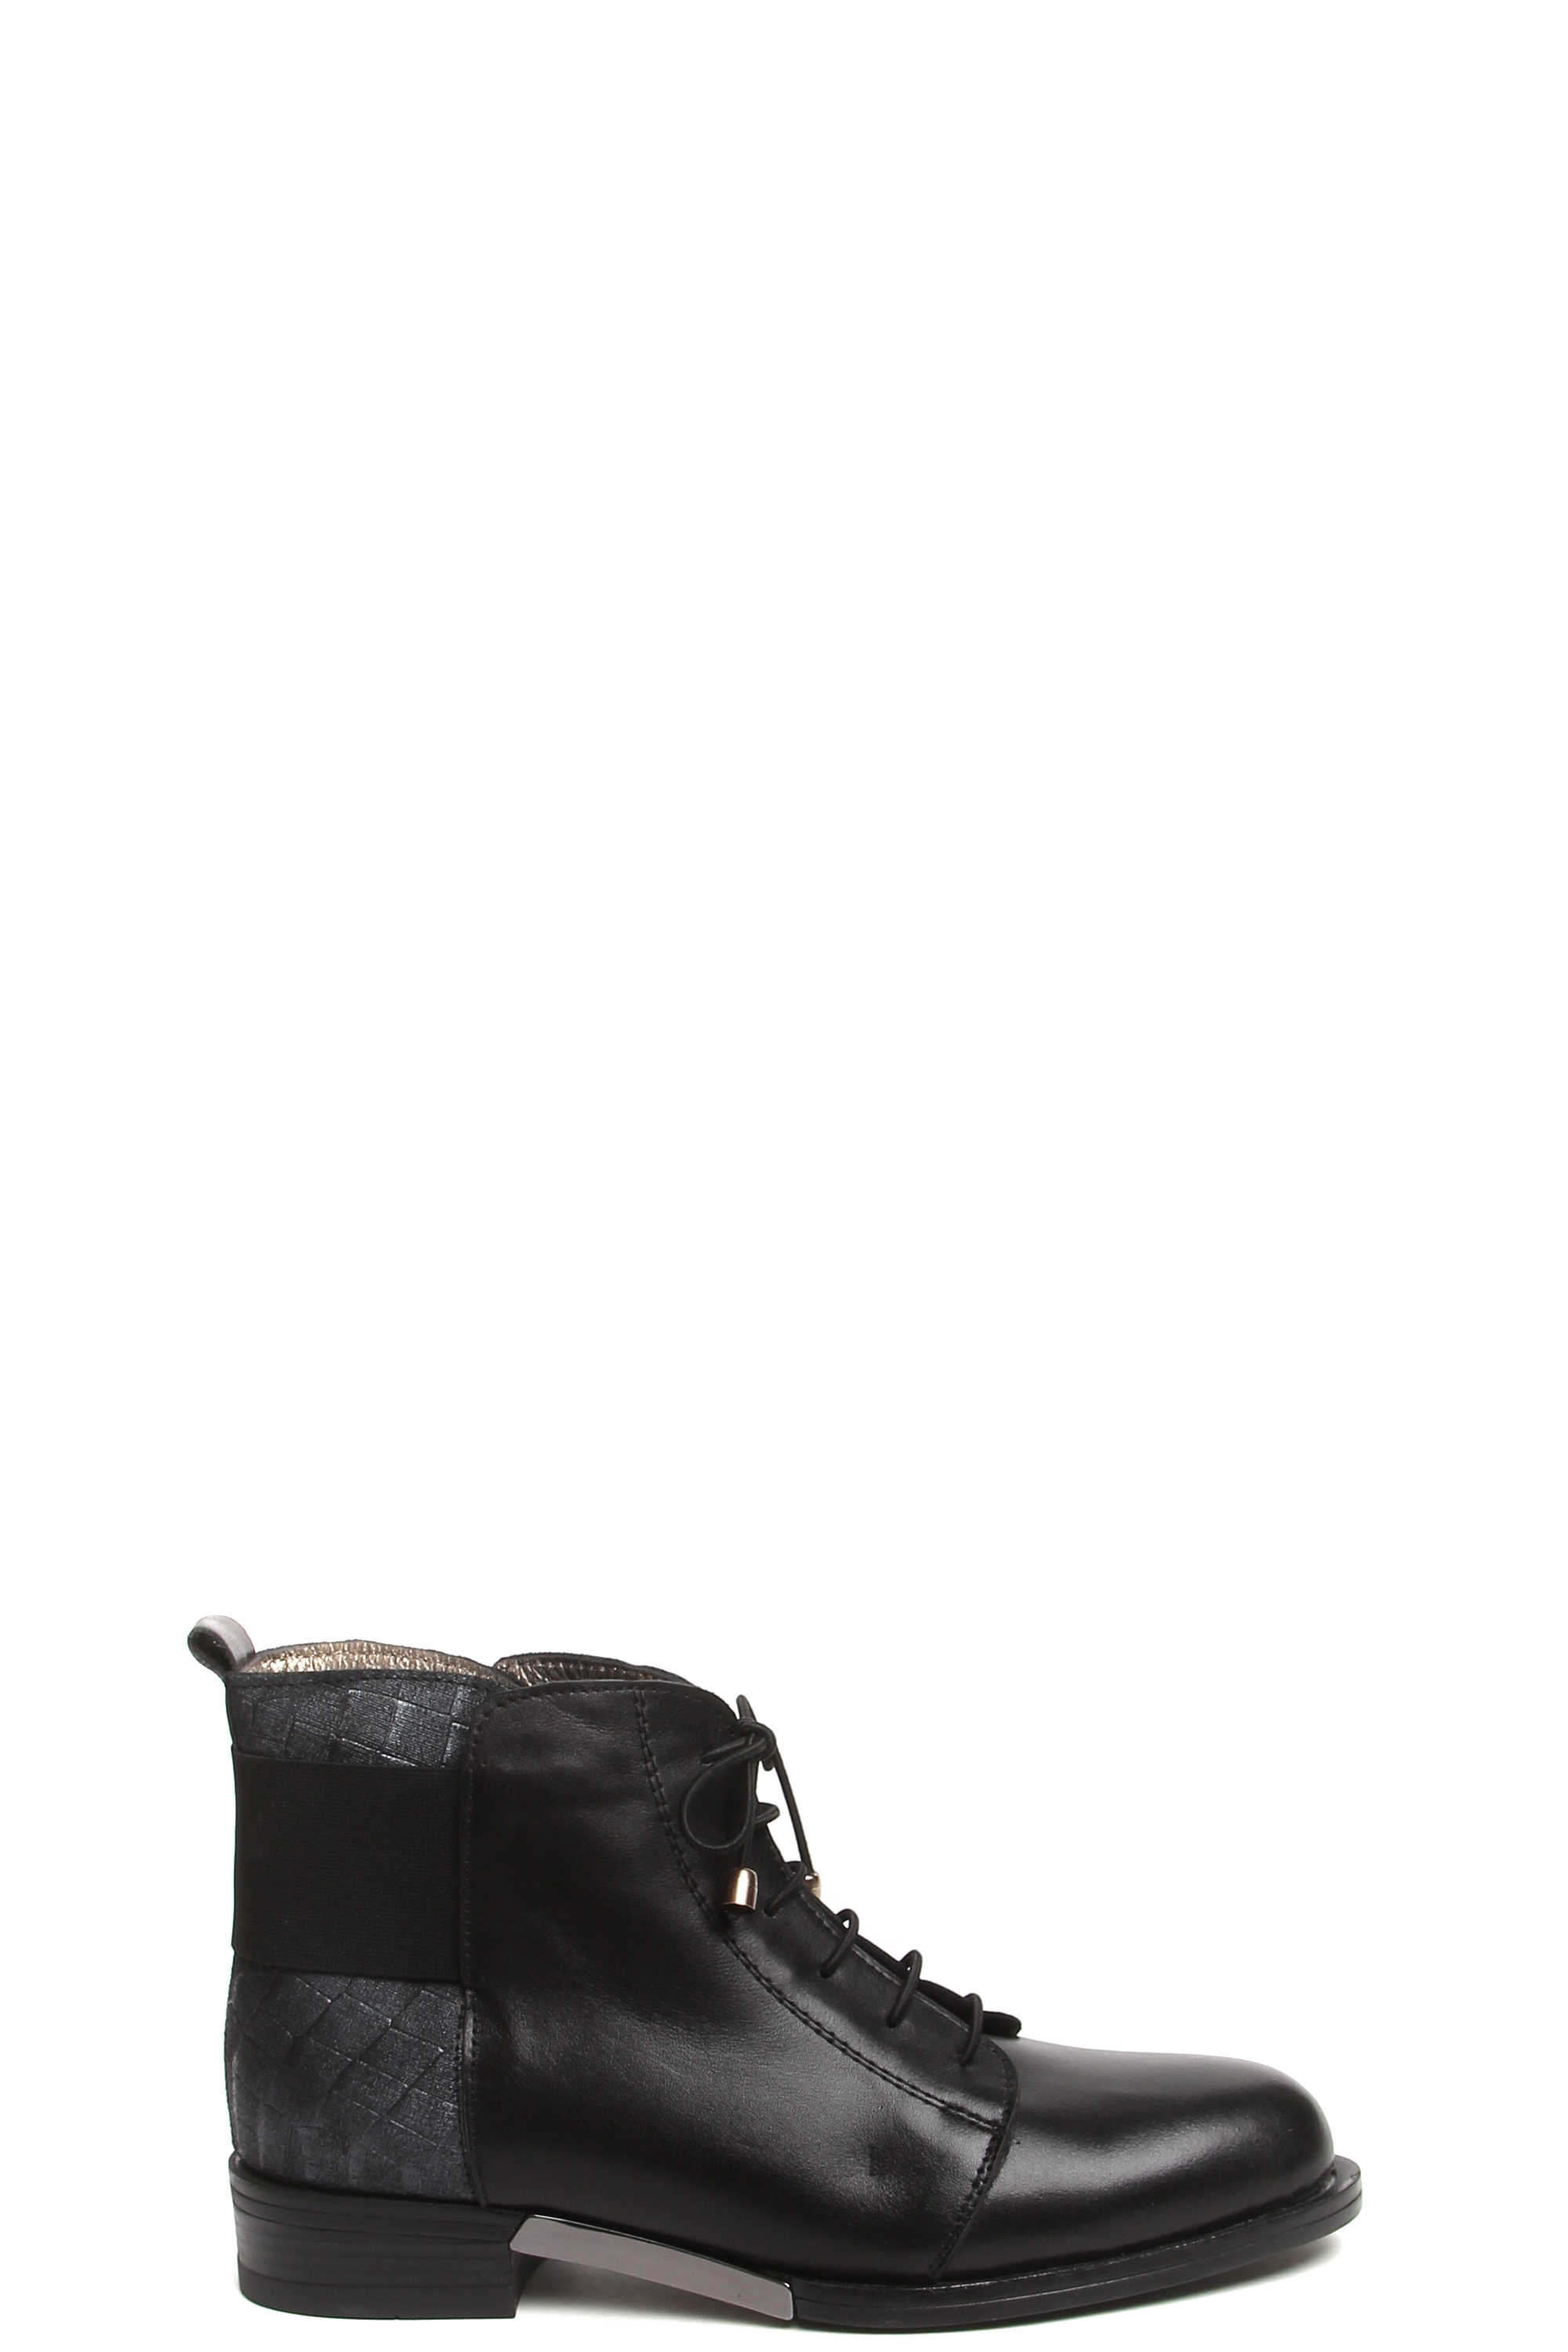 Ботинки MILANA 182696-2-110V черный - купить 8990